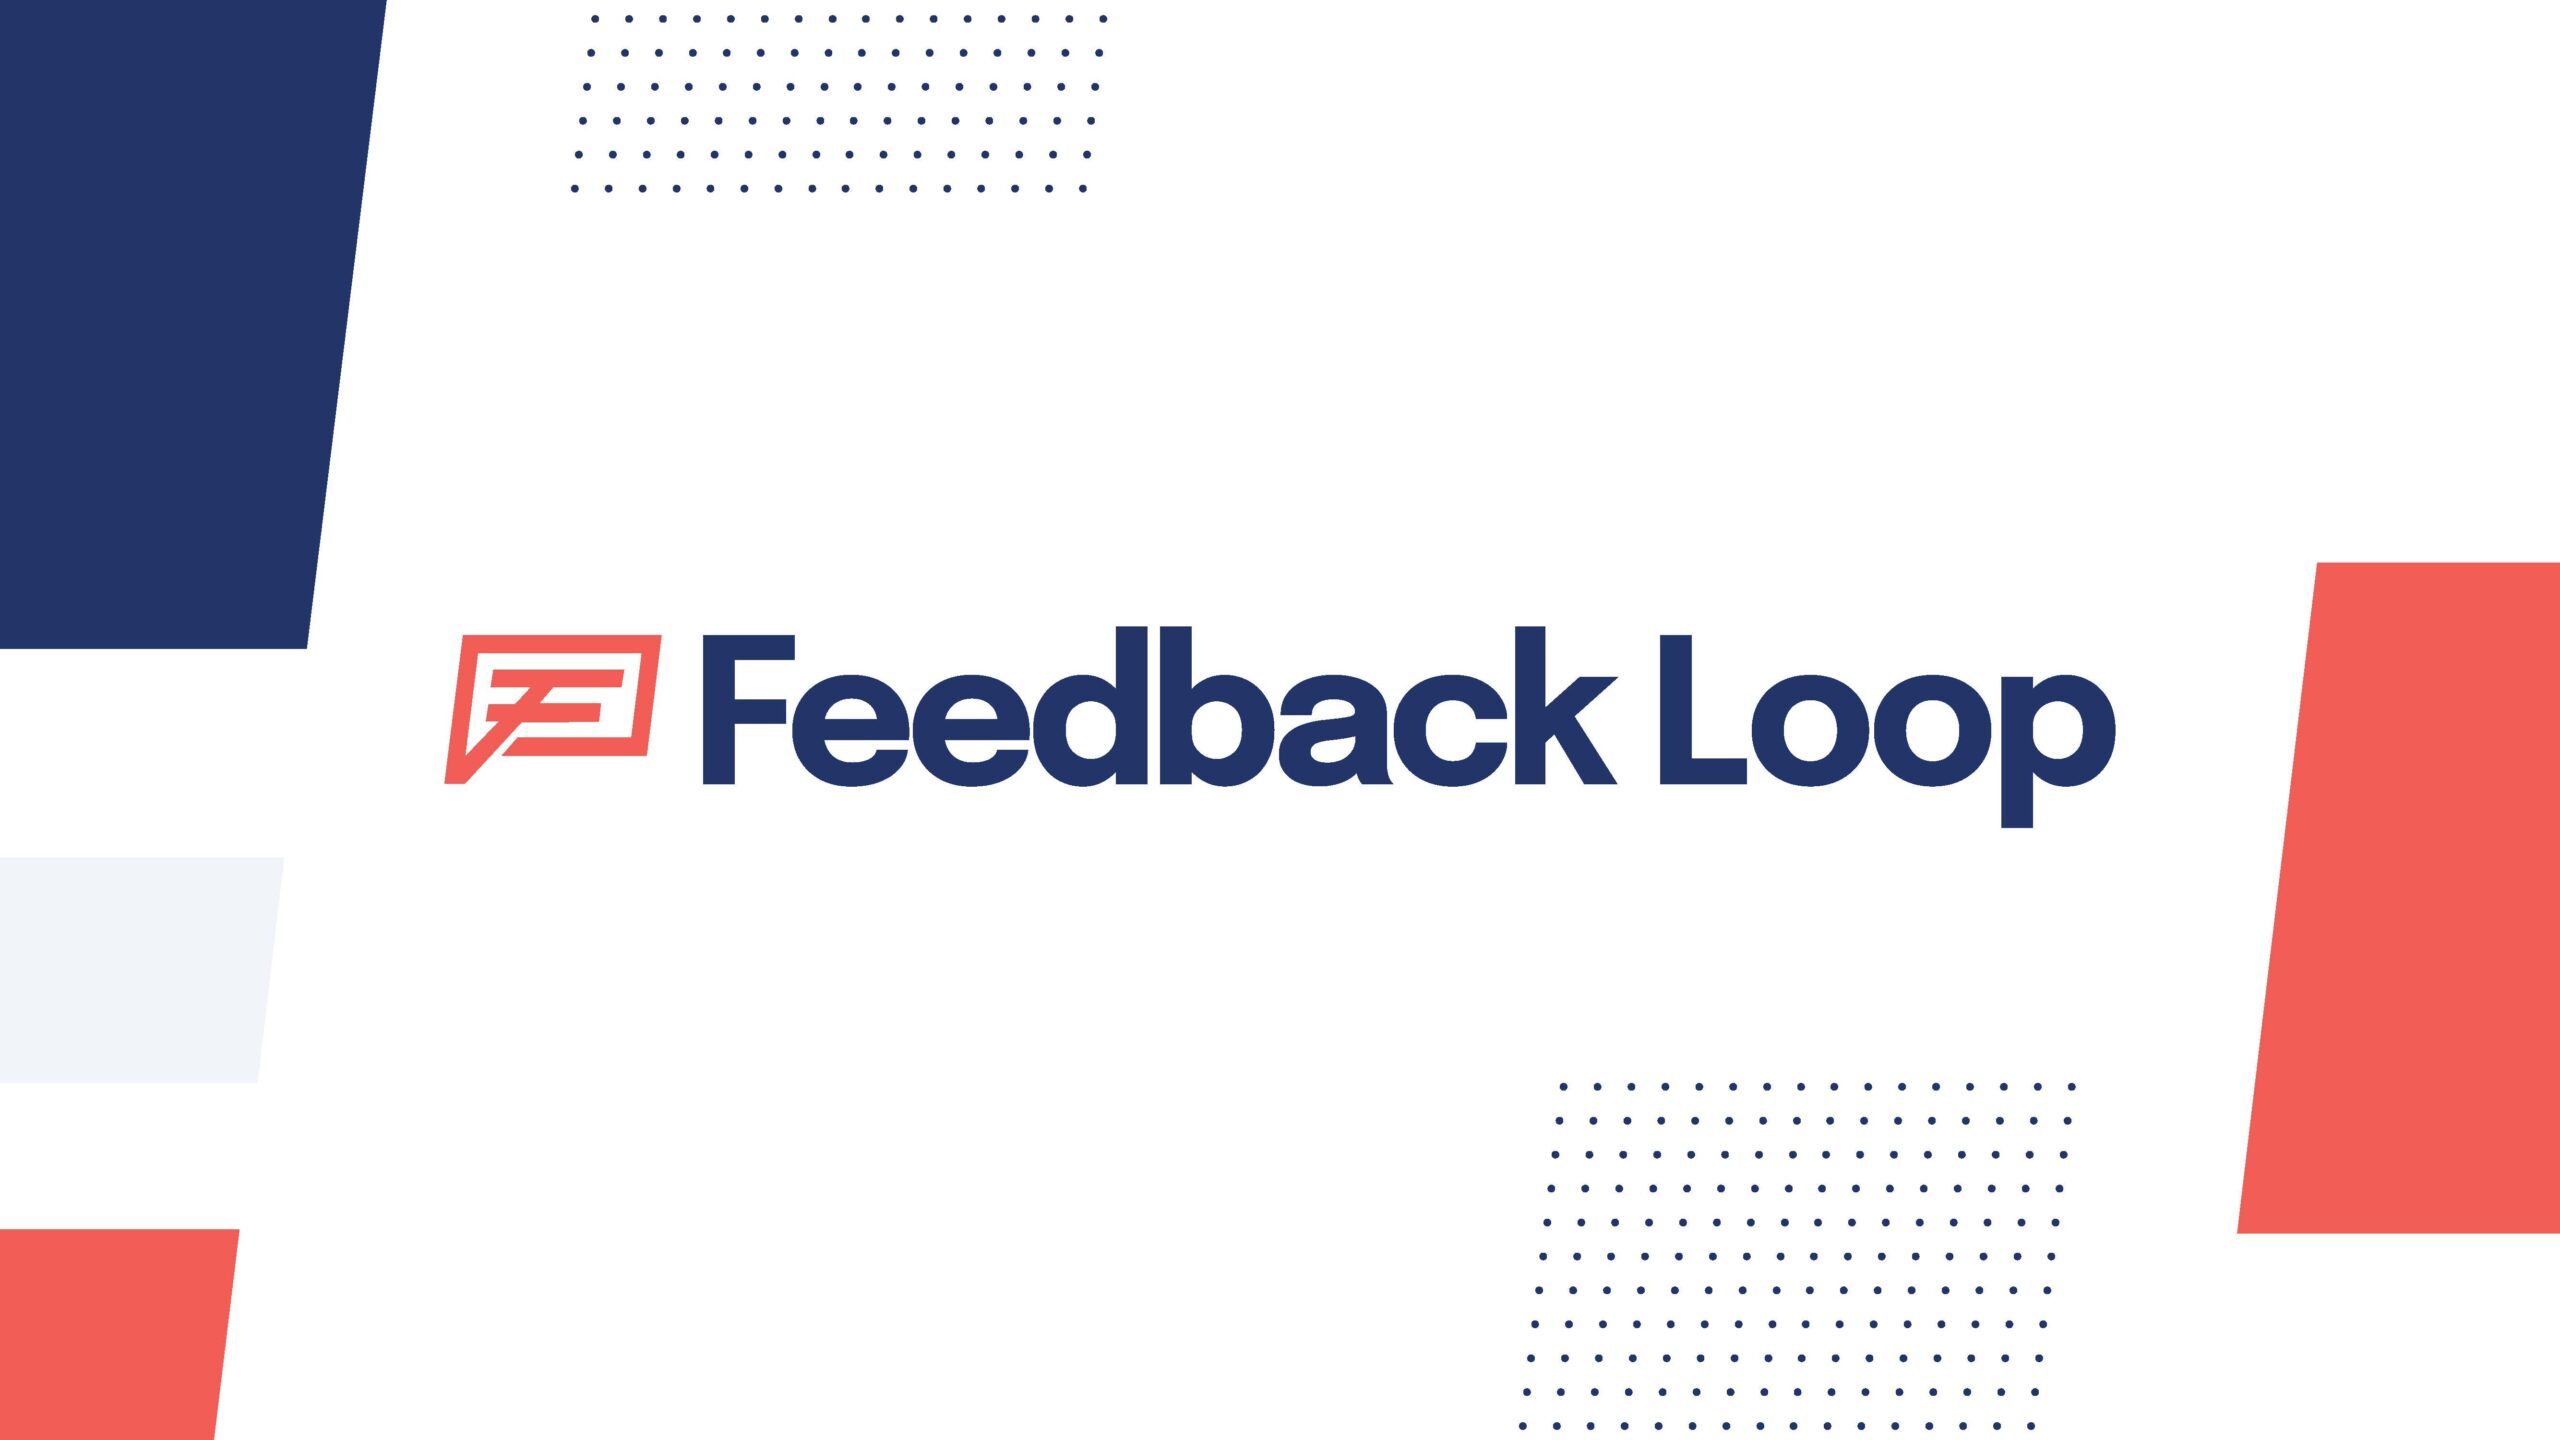 Feedback-Loop-Style-Frames_Page_02